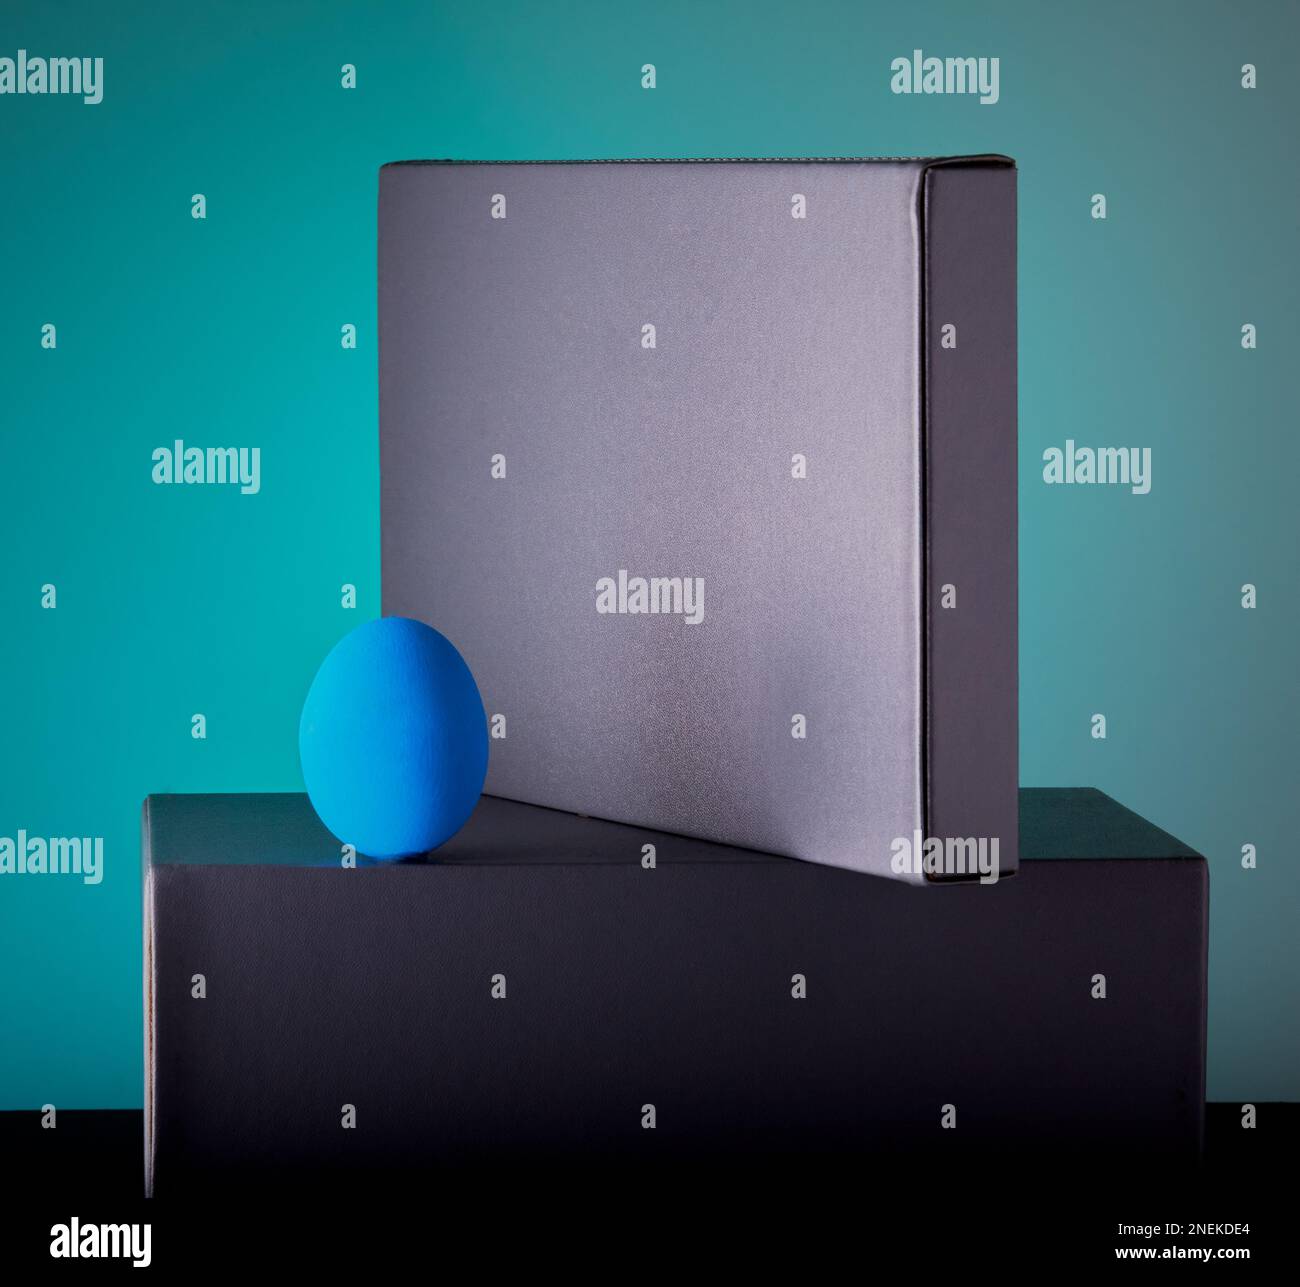 Ein neues Konzept mit einem blauen Ei auf einigen Studioblöcken mit blauem abgestuftem Hintergrund. Stockfoto